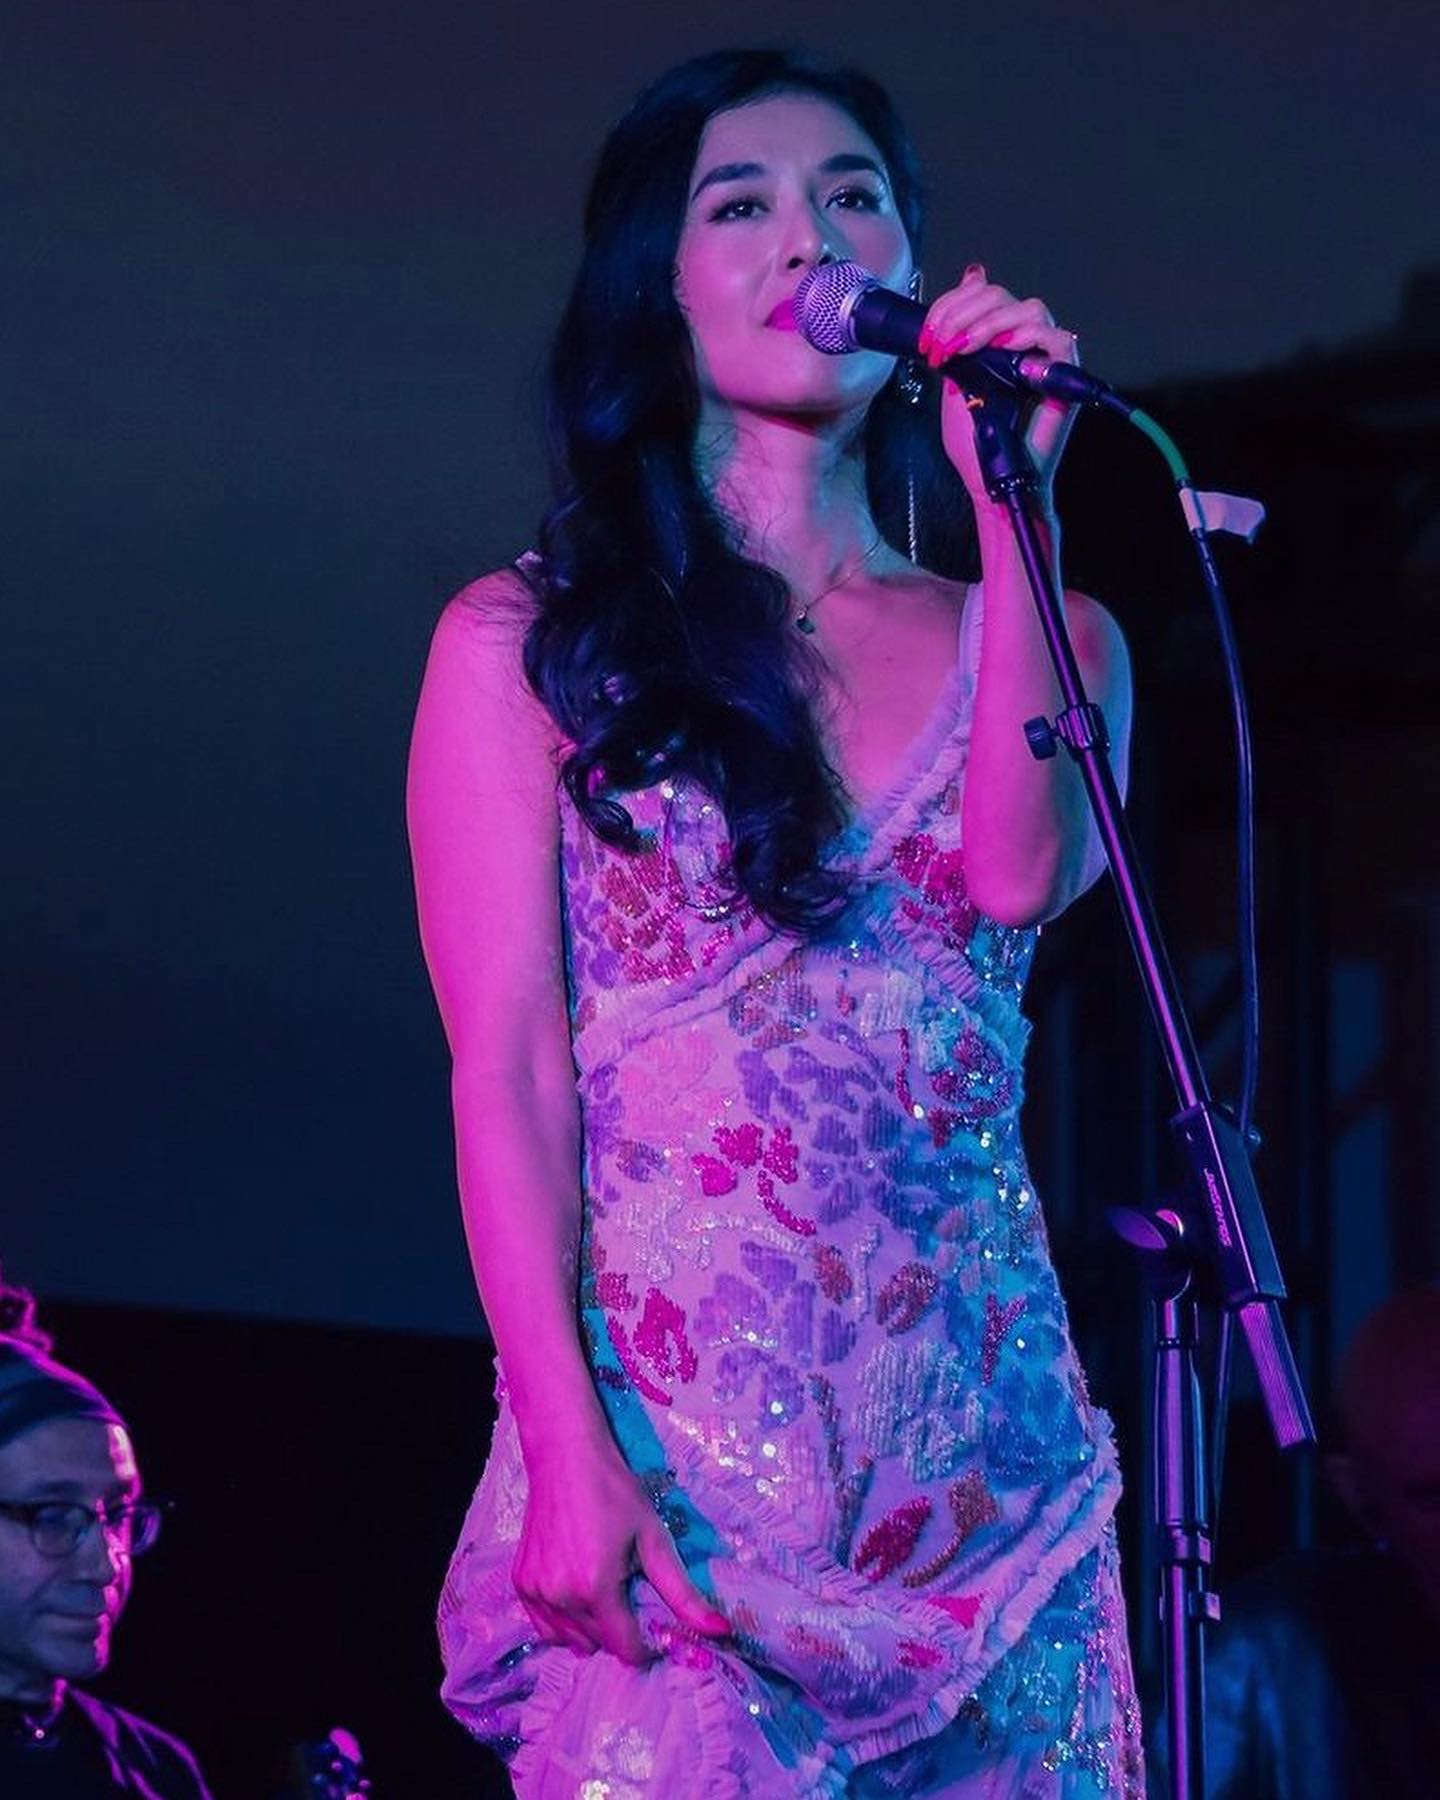 Teresa Mai là ai? Ca sĩ người Mỹ gốc Việt giành giải Grammy 2022 - Ảnh 7